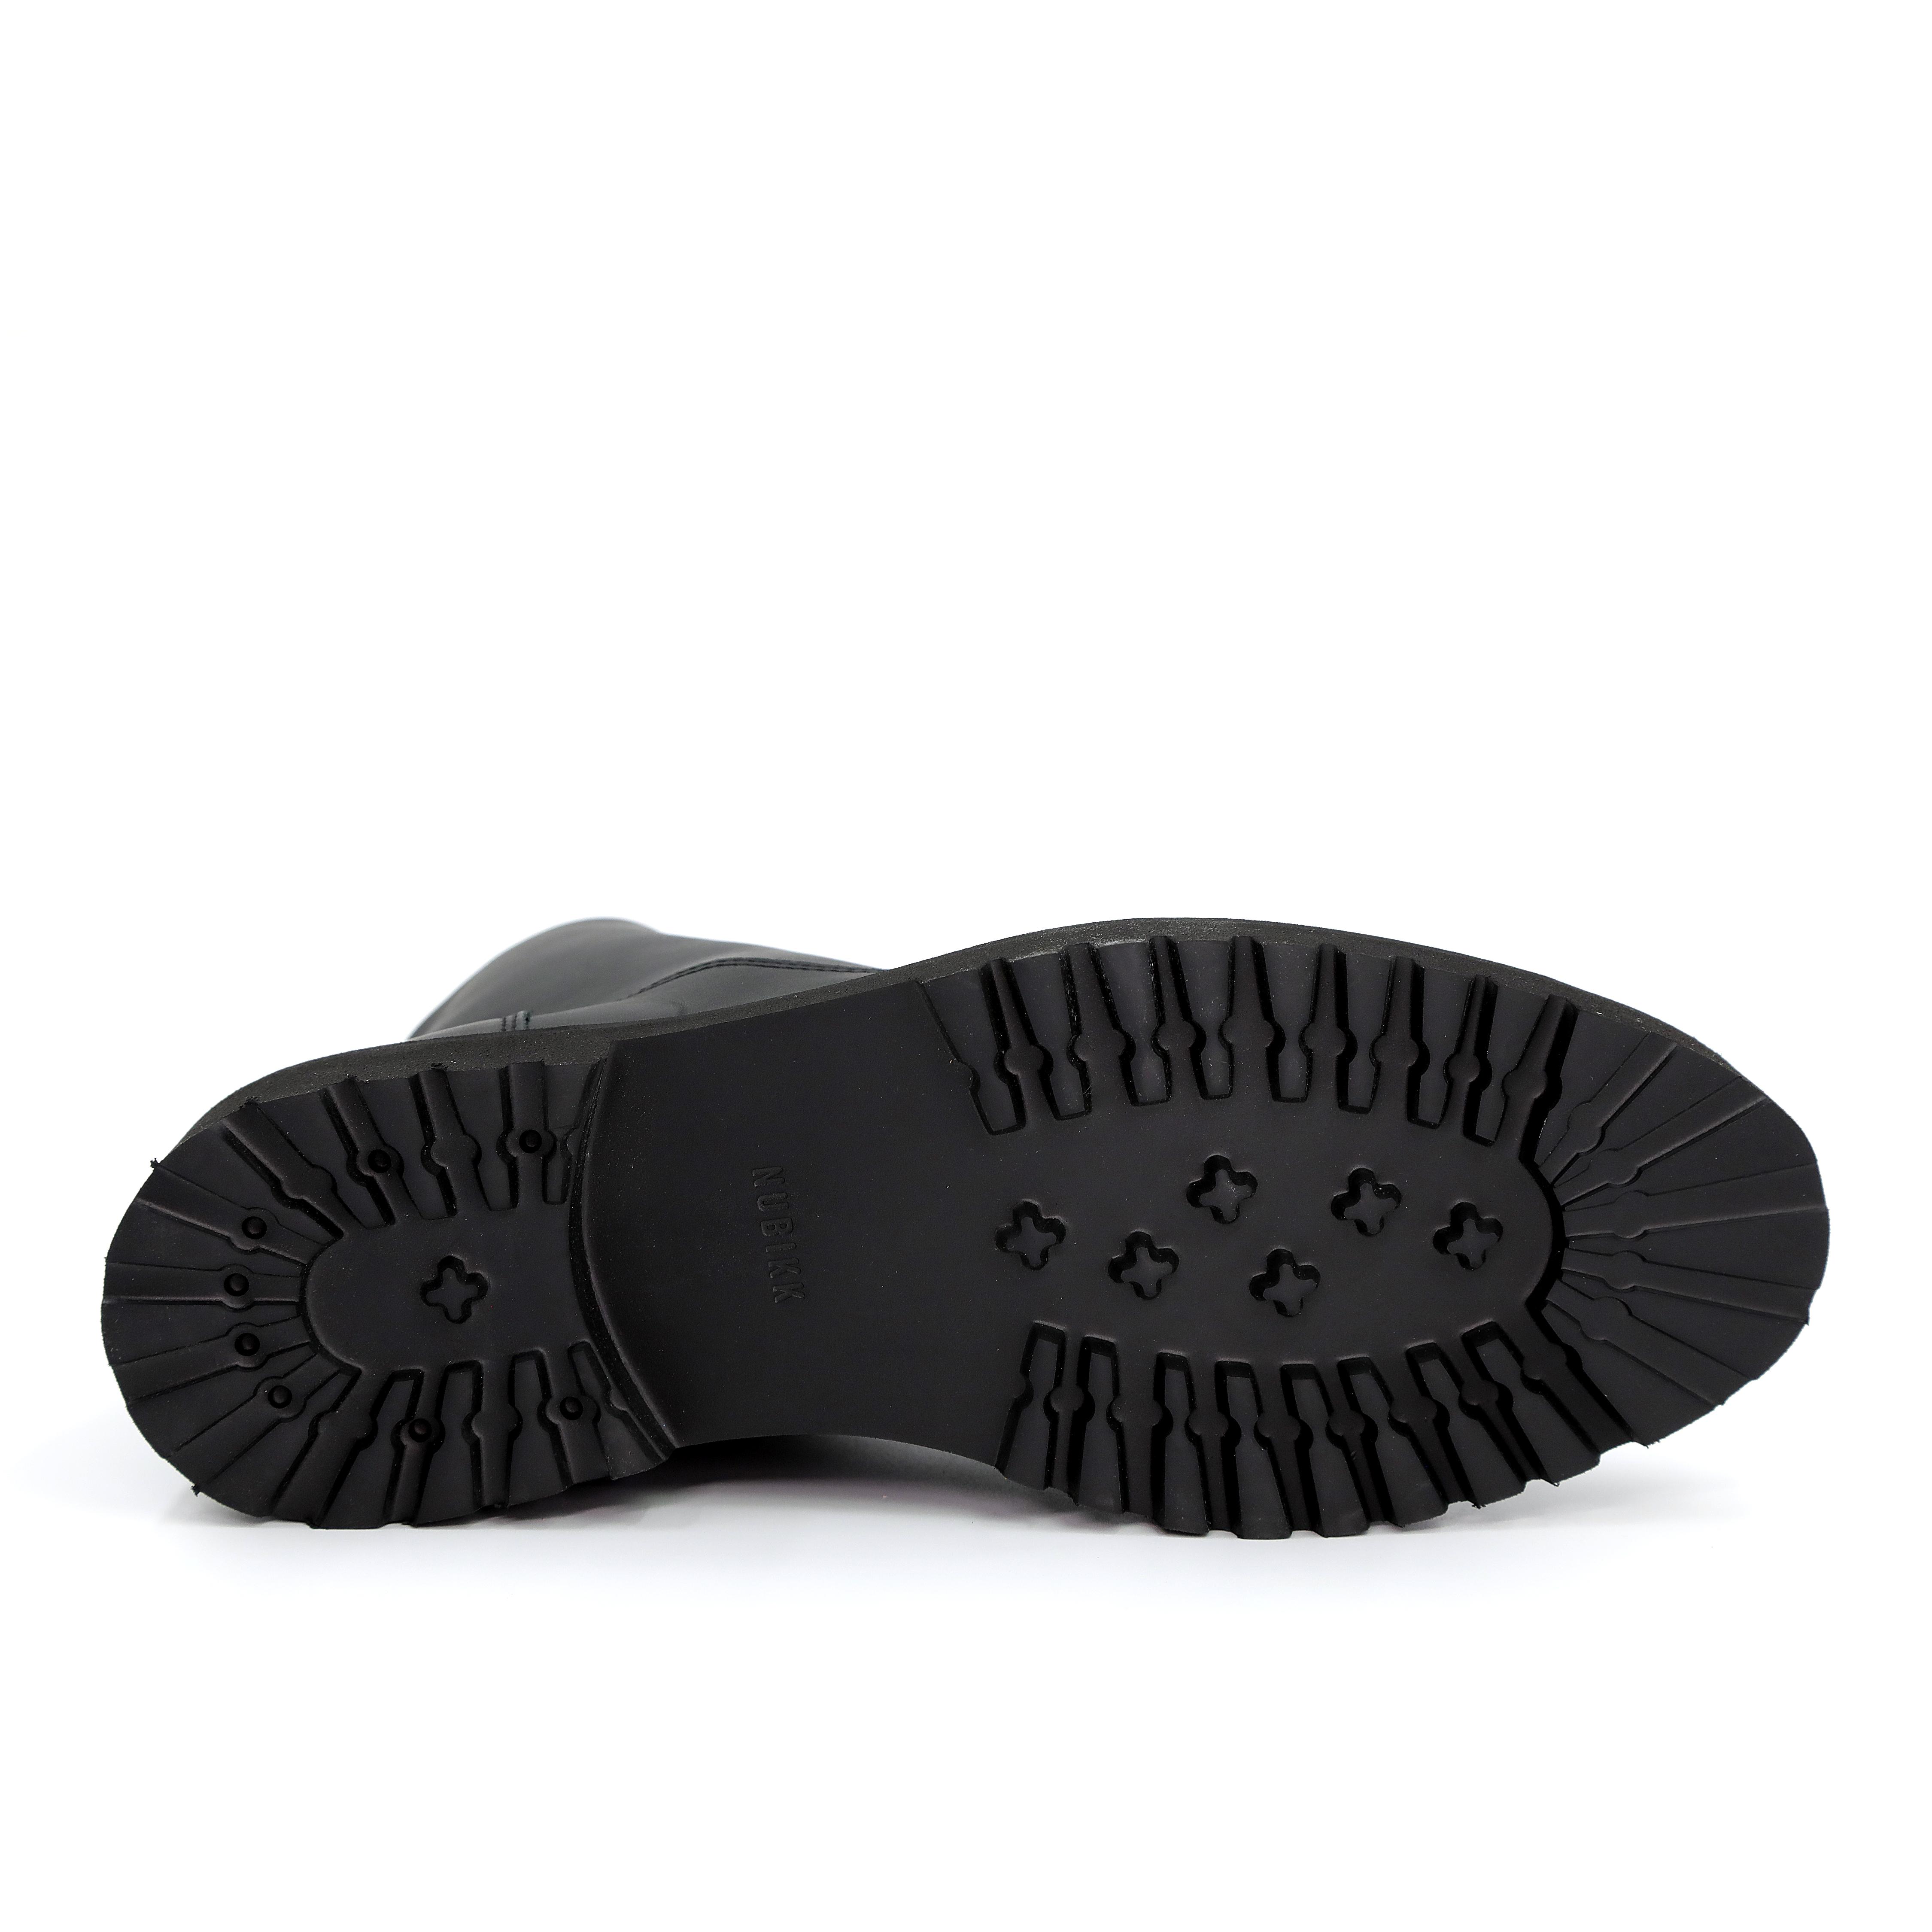 Мужские ботинки Nubikk, черные, цвет черный, размер 42 - фото 5